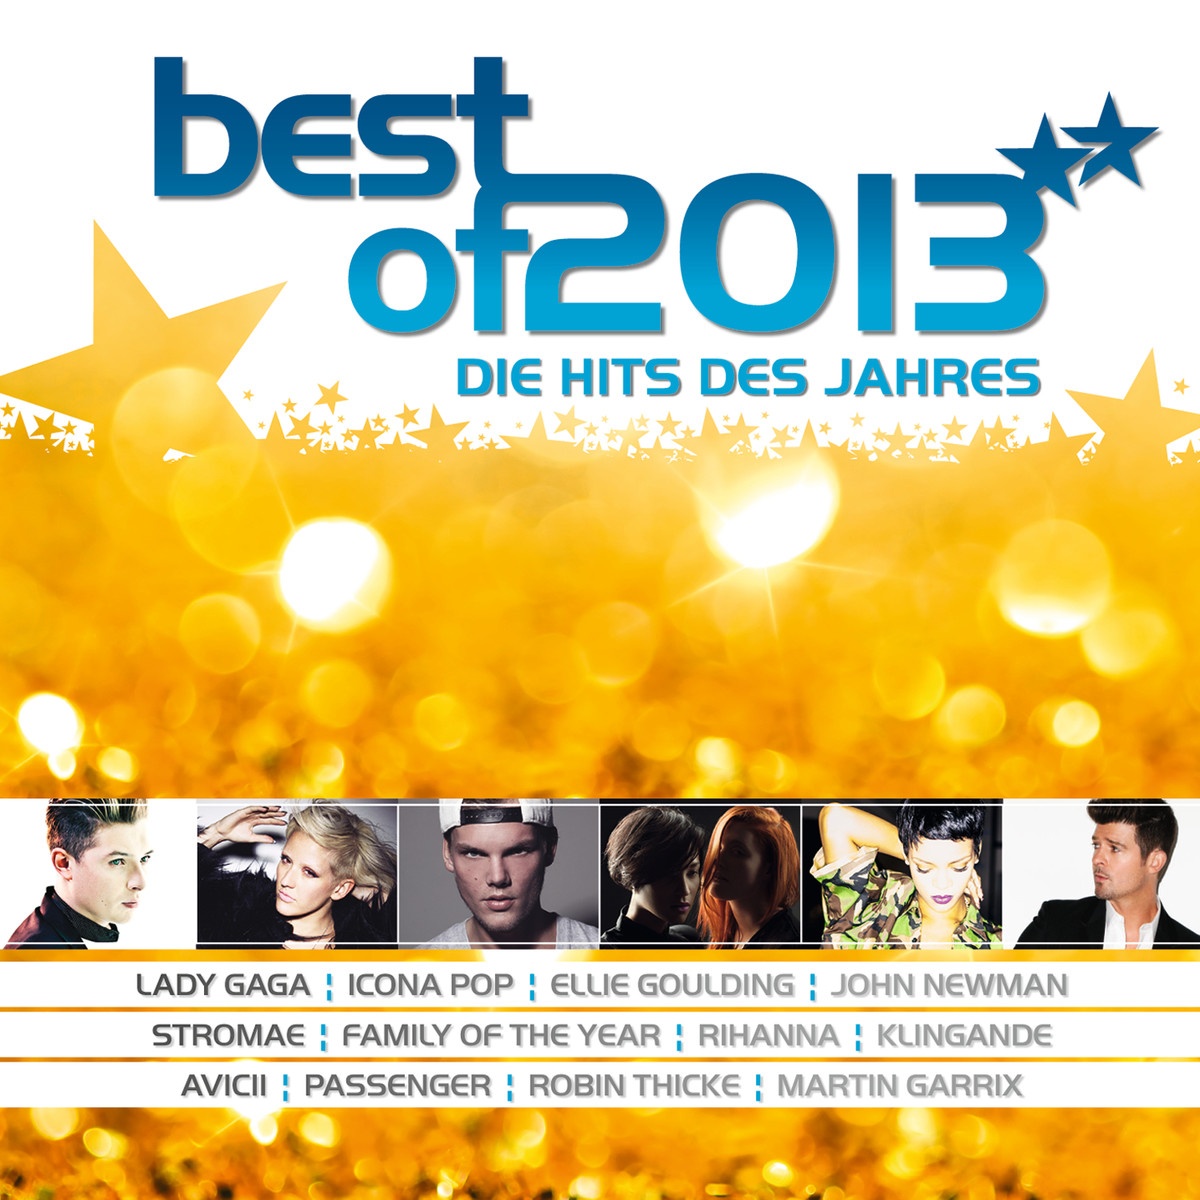 Best of 2013 - Die Hits des Jahres